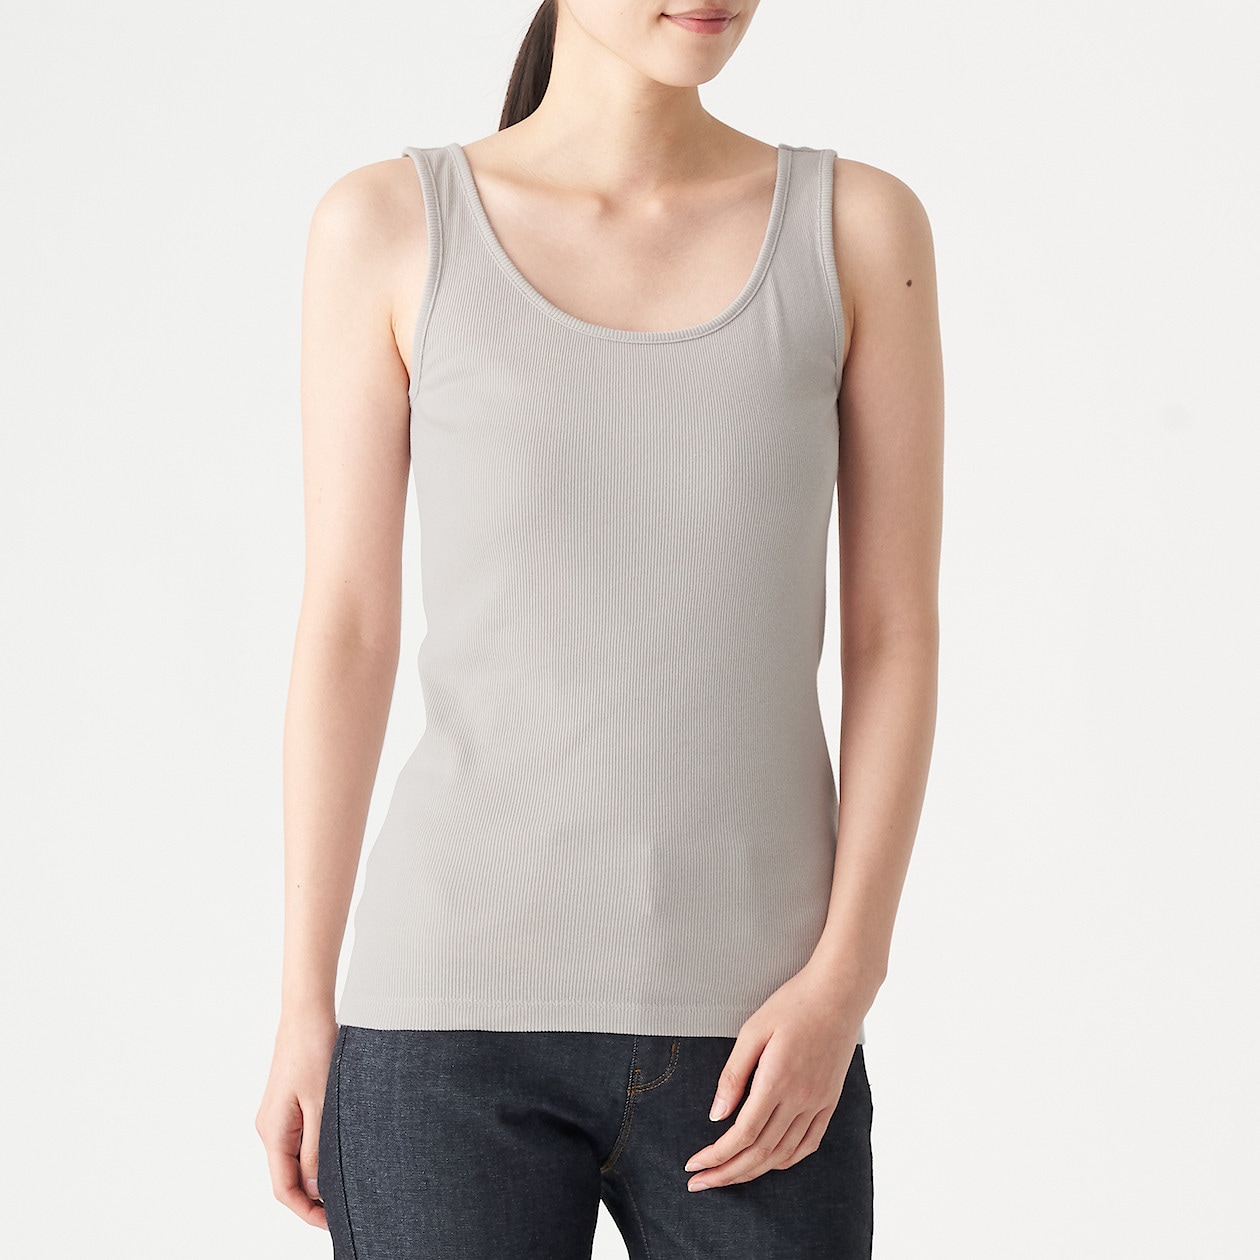 リブ編みタンクトップ 婦人ｍ ライトシルバーグレー Tシャツ カットソー 半袖 婦人 レディース 通販 無印良品